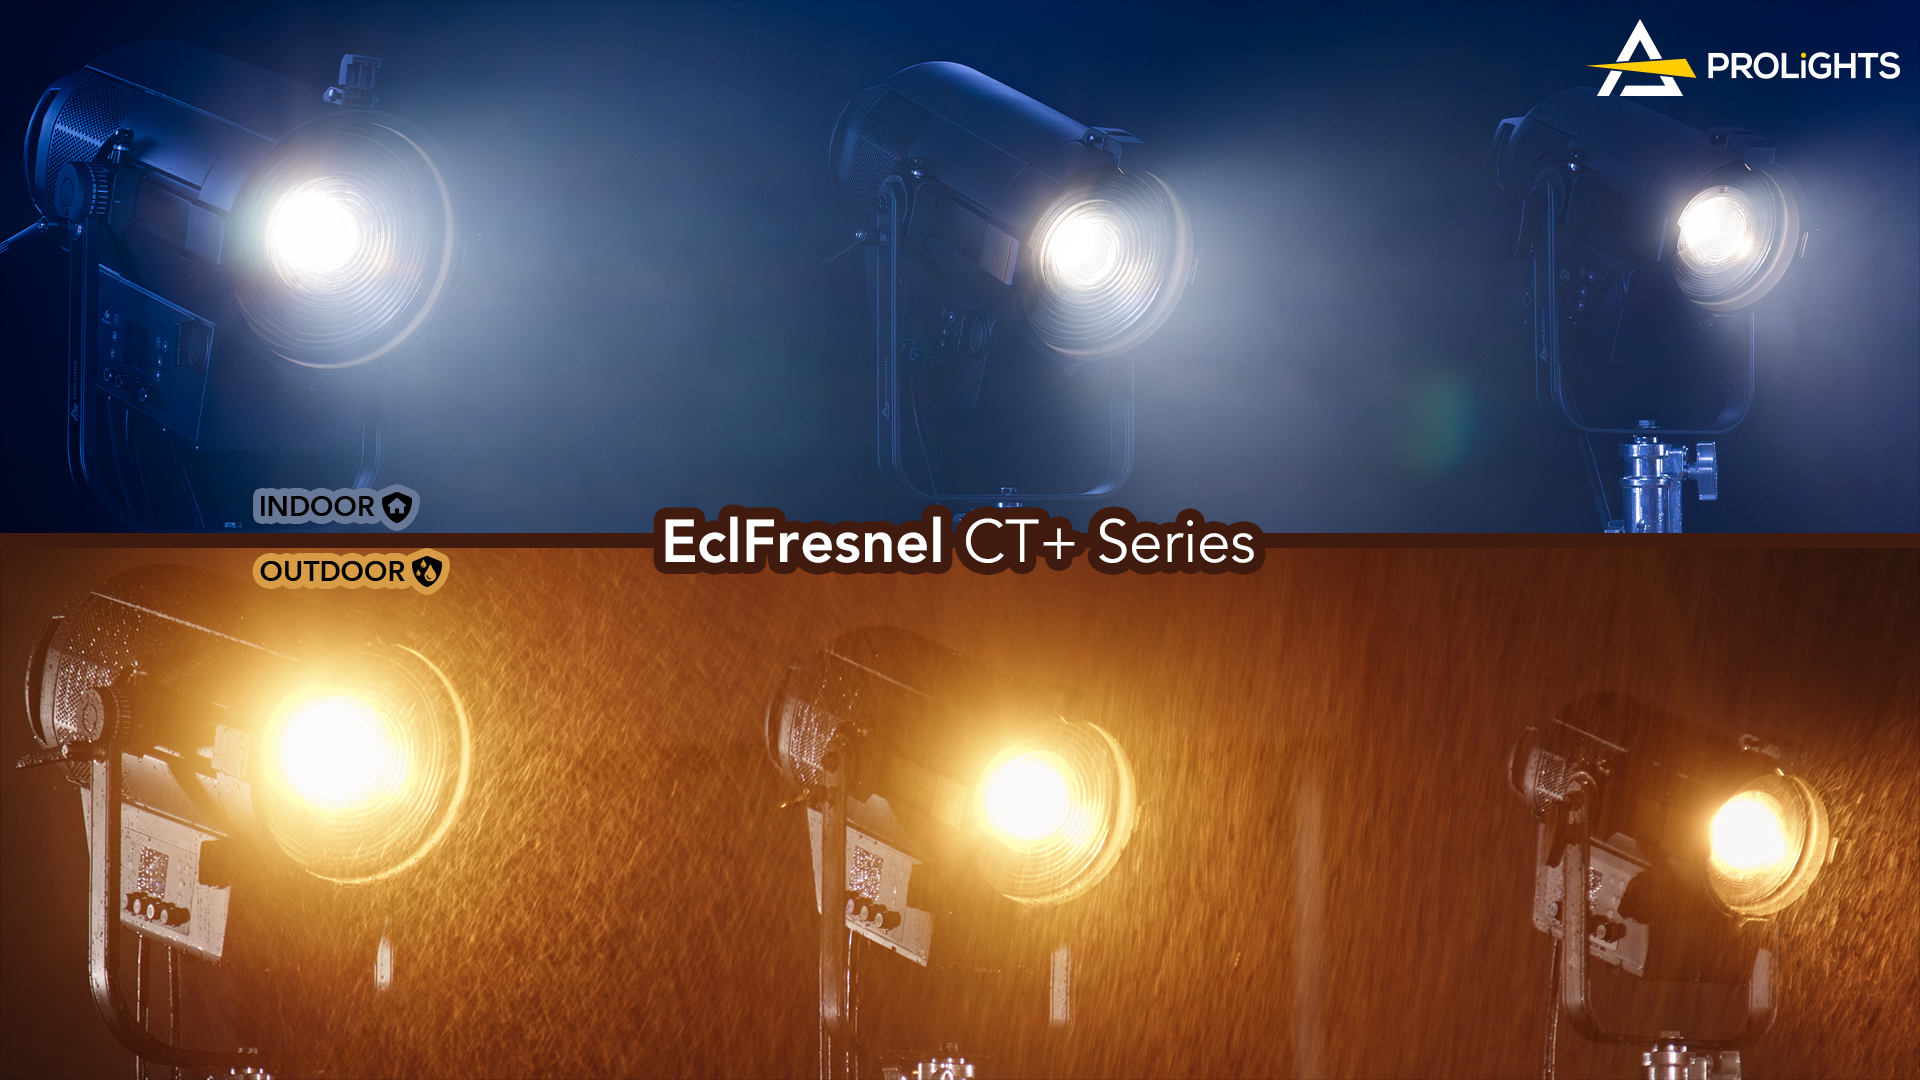 EclFresnel CT+ Series - Revolutionizing LED Fresnels
